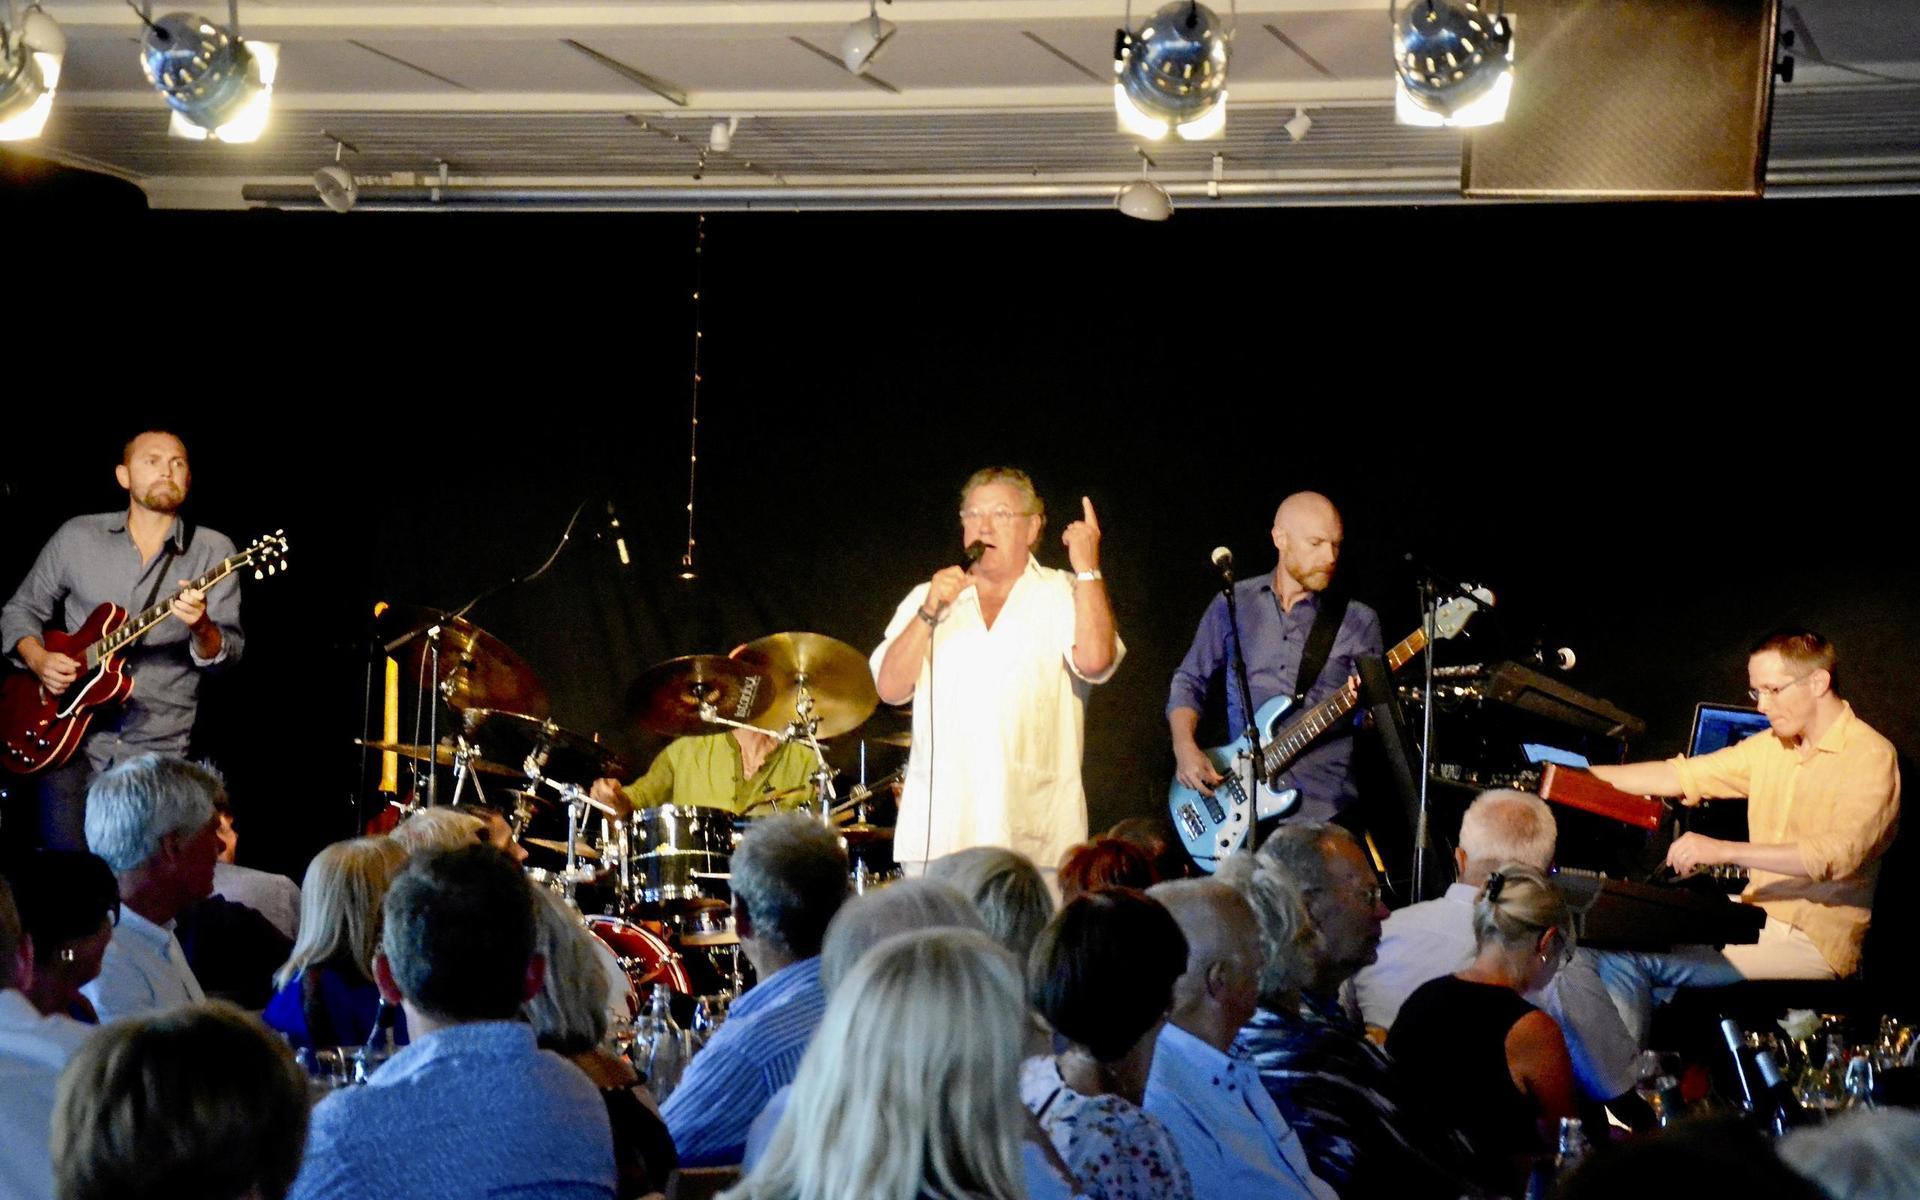 Tommy Körberg firade 70-årsdagen 2018 på Fridas i Kärradal med en konsert med musikerna Johan Liljedahl (gitarr), André Ferrari (trummor), Fredrik Jonsson (bas) och Calle Flemsten (keyboard).